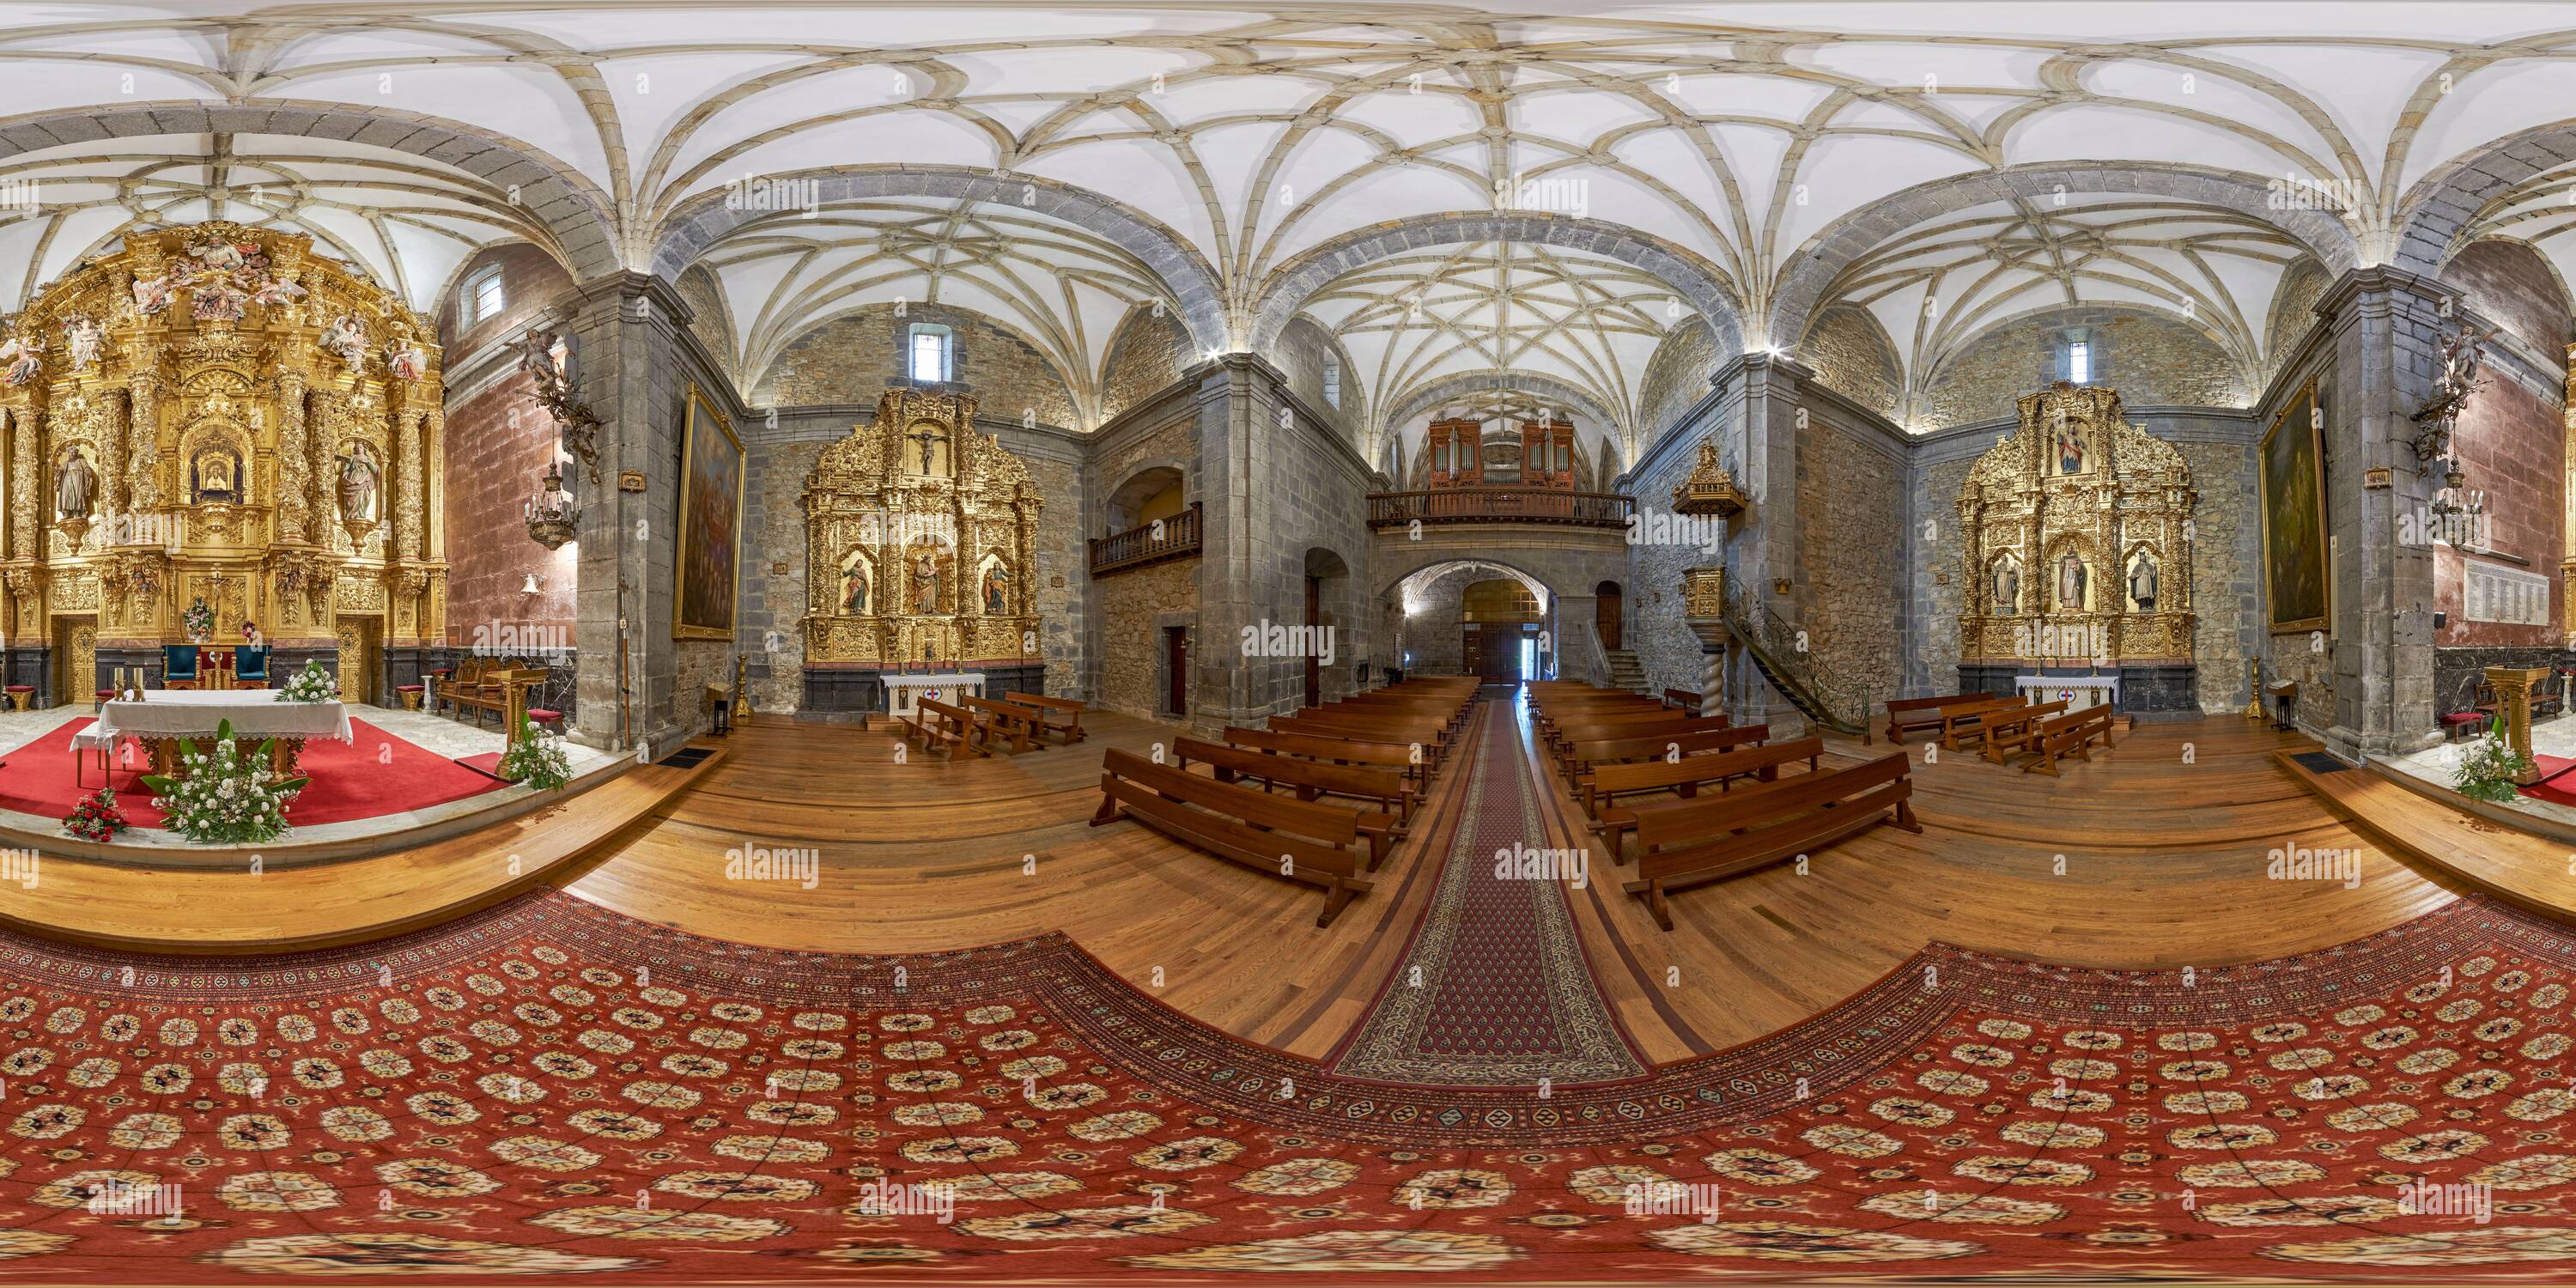 Visualizzazione panoramica a 360 gradi di 360 gradi panoramico: Interno della chiesa 'la Bien Aparecida' patrono della Cantabria, Ampuero, Spagna, Europa